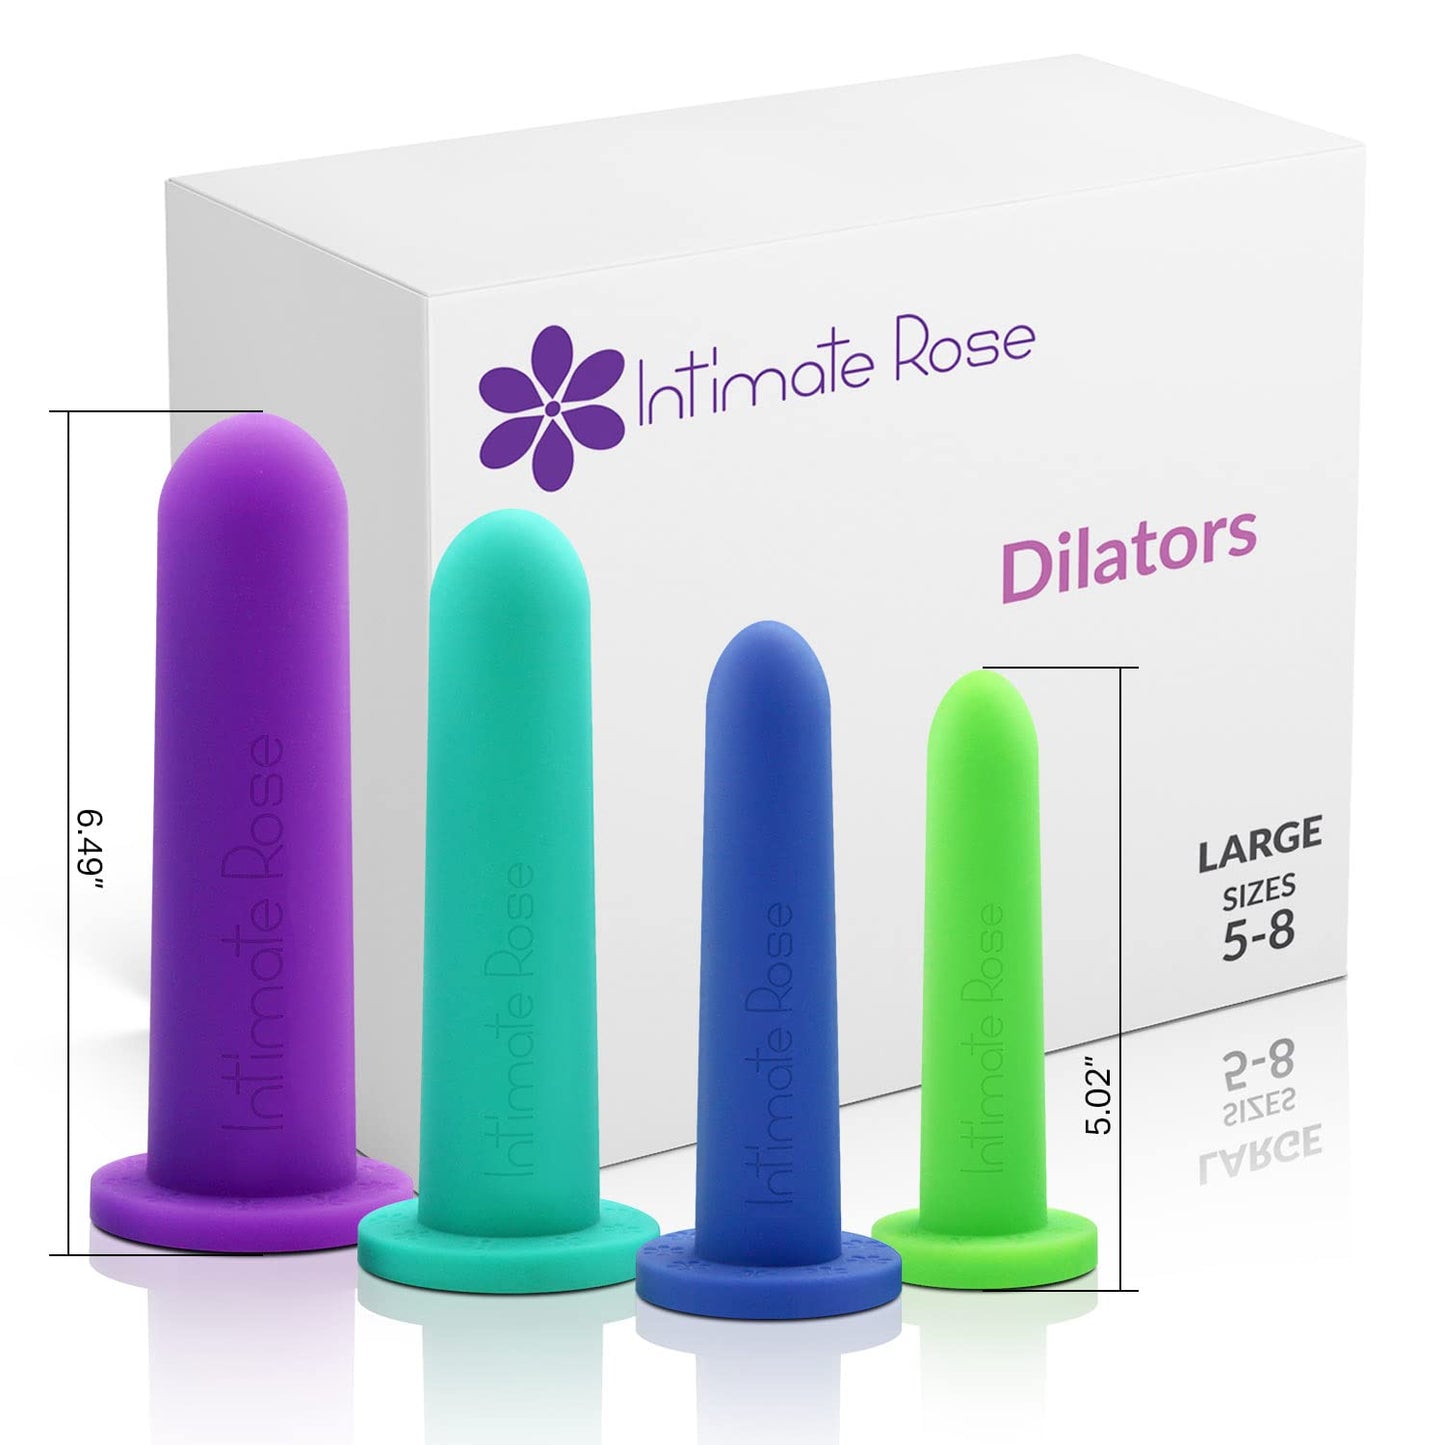 Large Silicone Vaginal Dilators - 5-8 sizes